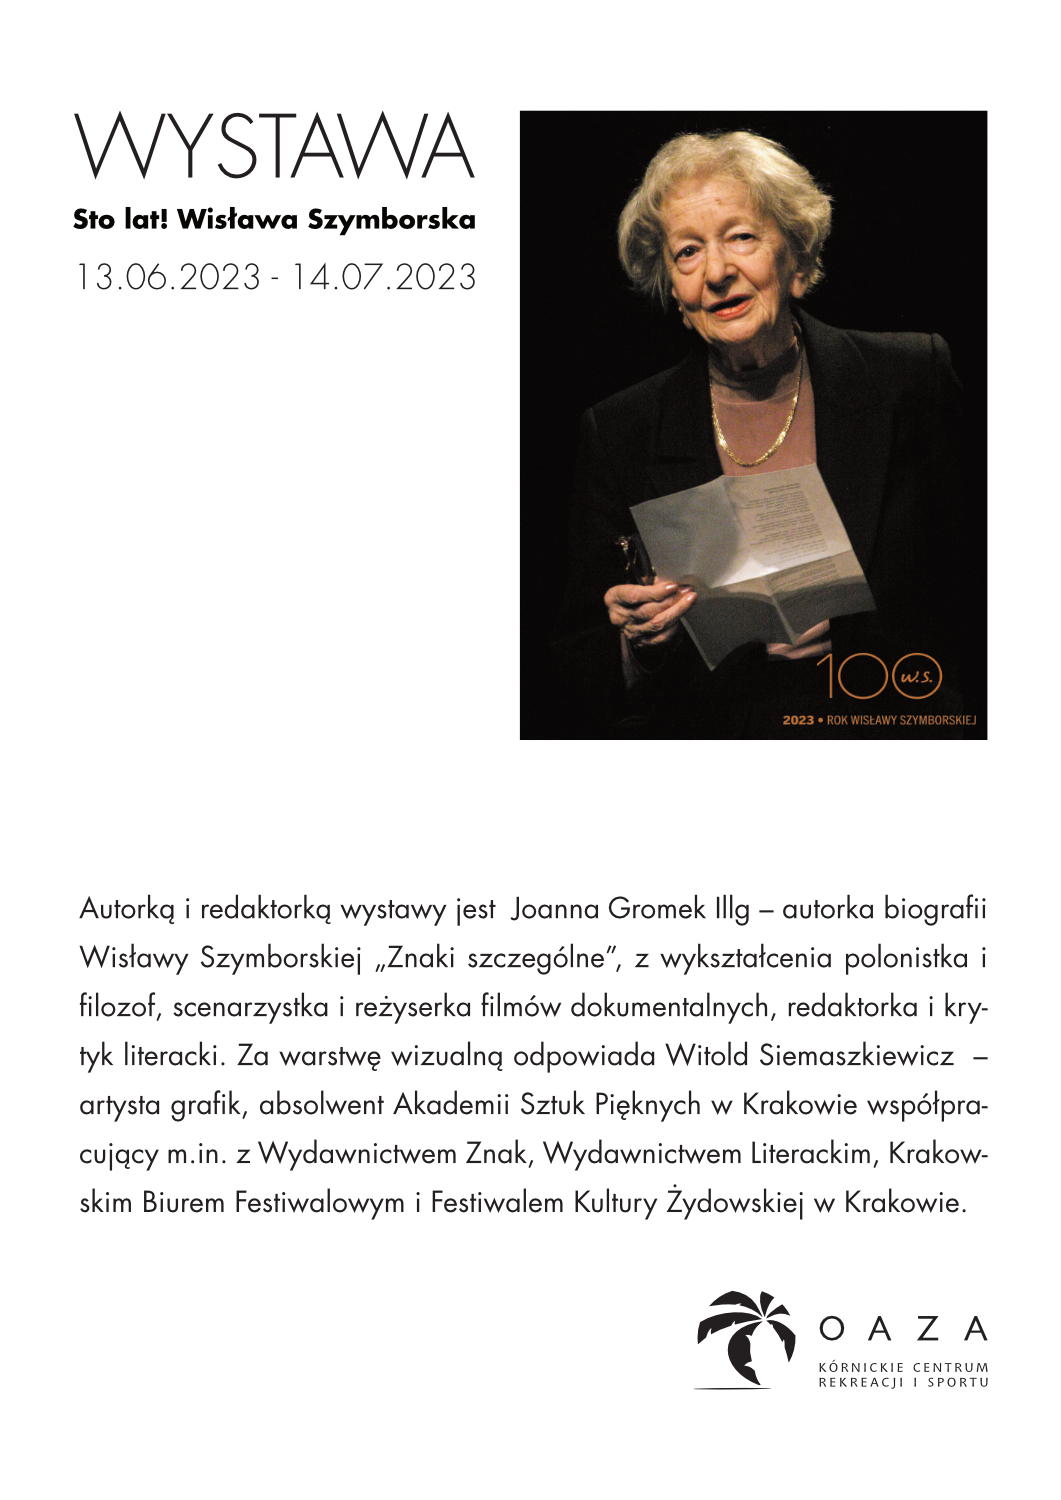 Wystawa "STO LAT! Wisława Szymborska"